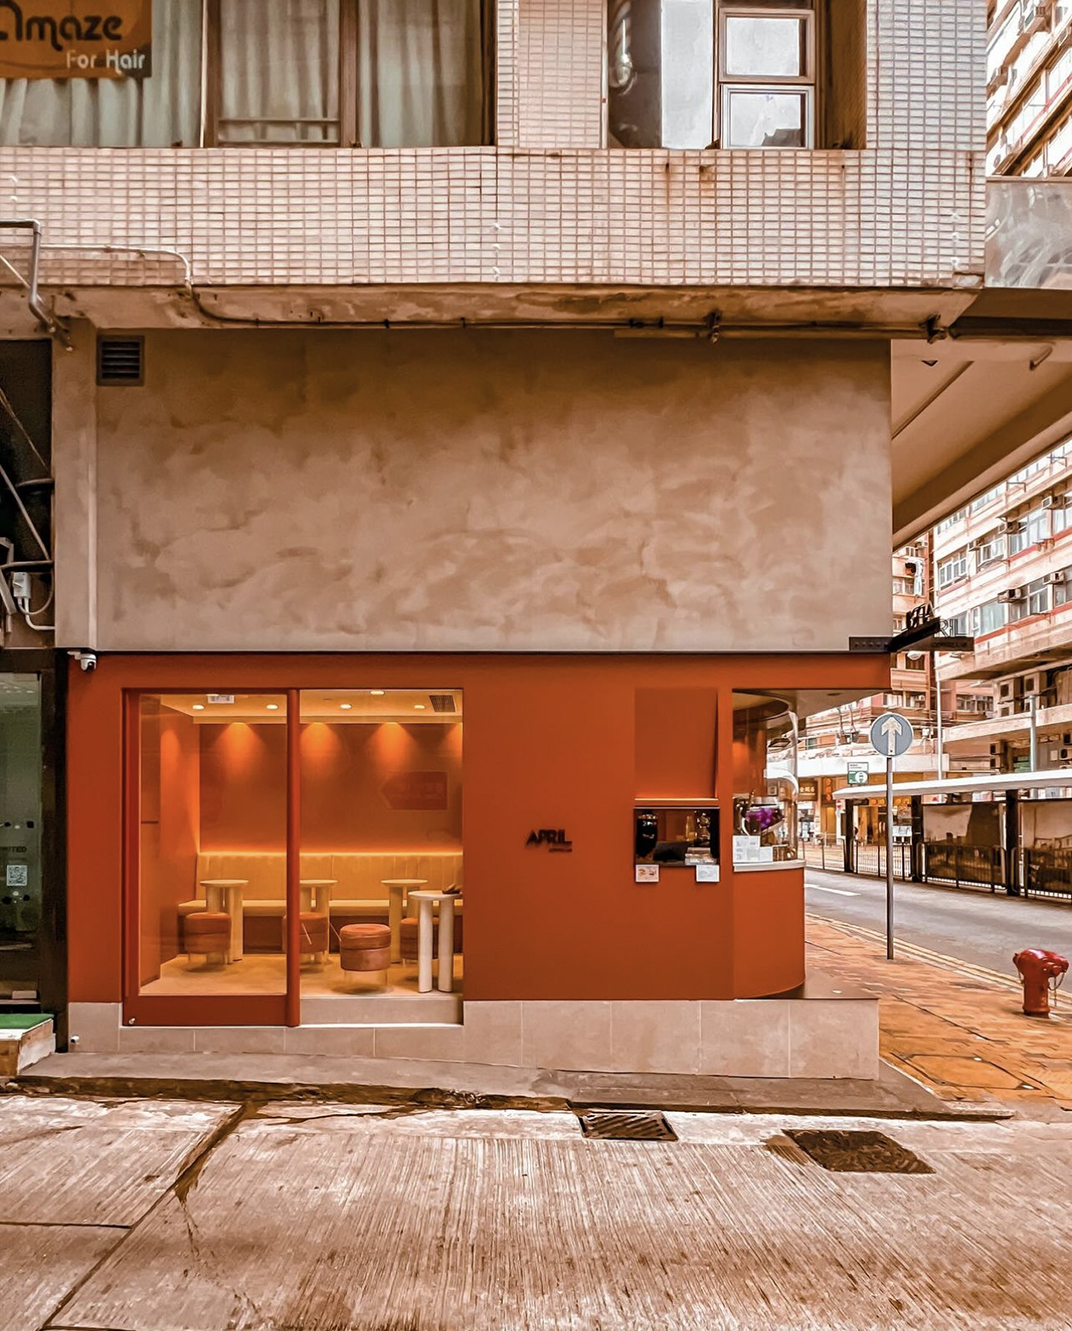 焦糖红色咖啡店Sai Ying Pun 香港 深圳 珠海 北京 广州 武汉 咖啡店 餐饮商业 logo设计 vi设计 空间设计